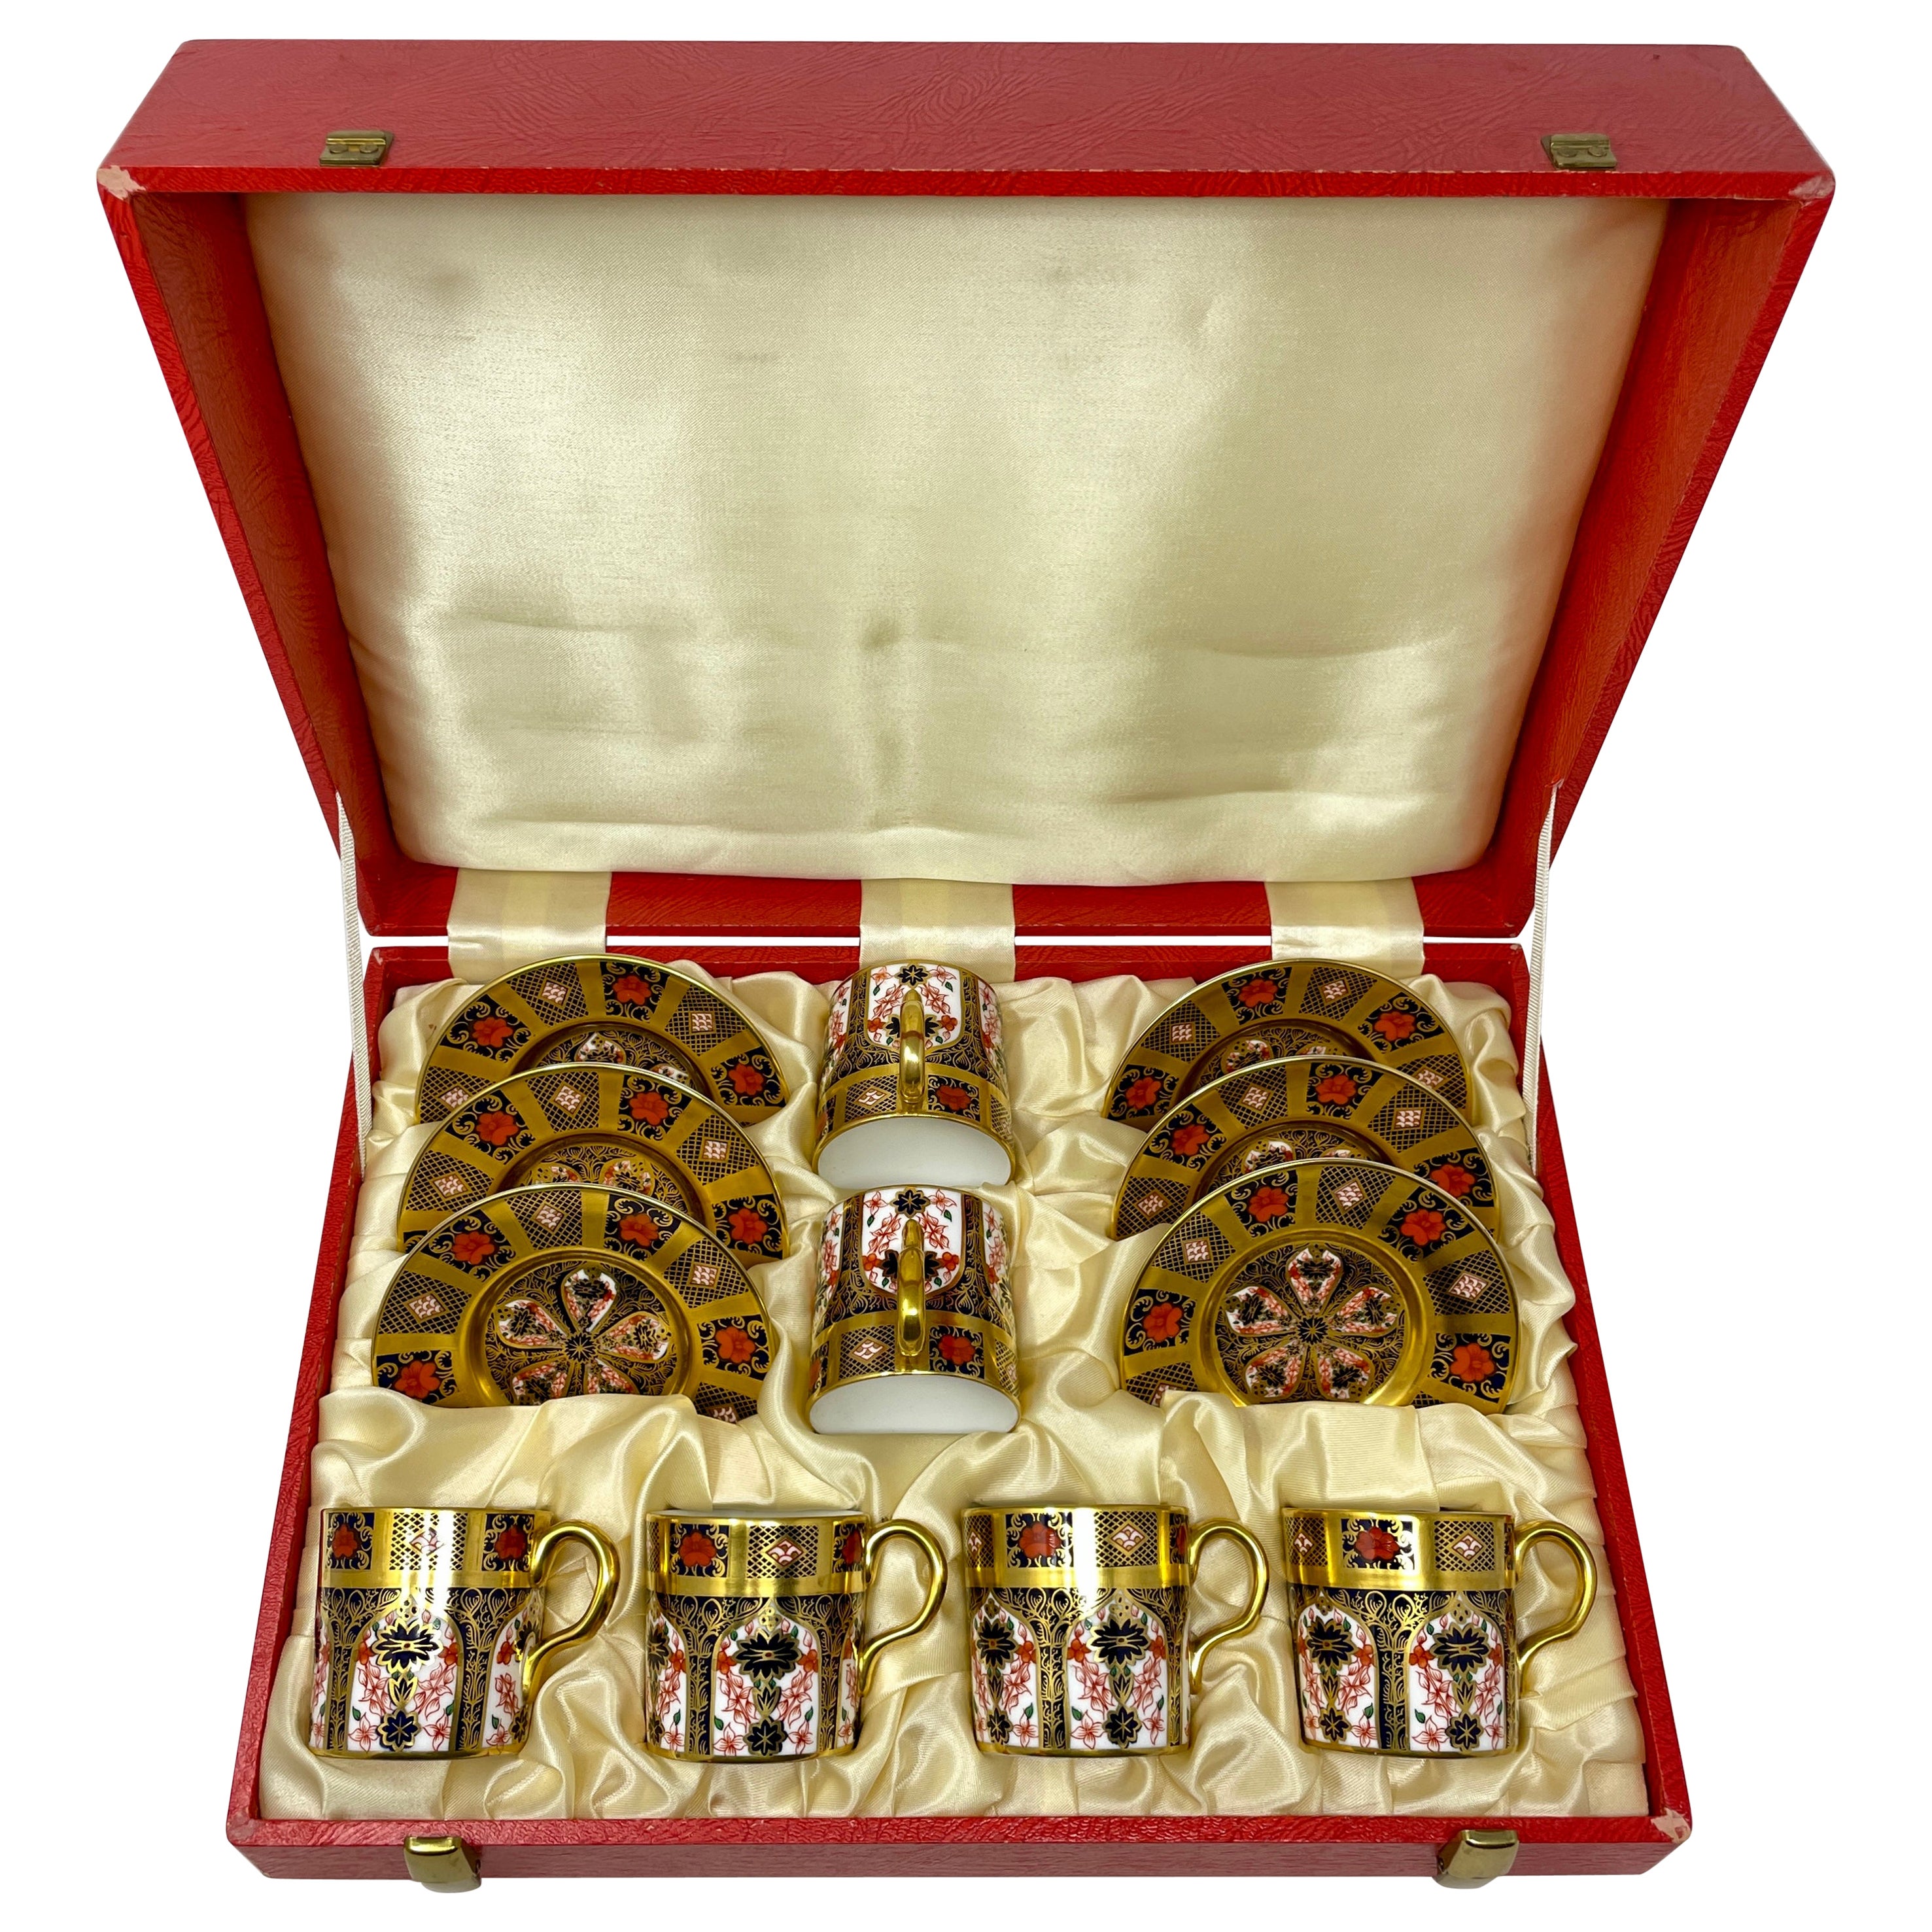 Set von 6 Demitasse-Tasse und Untertassen aus englischem Royal Crown Derby-Porzellan.